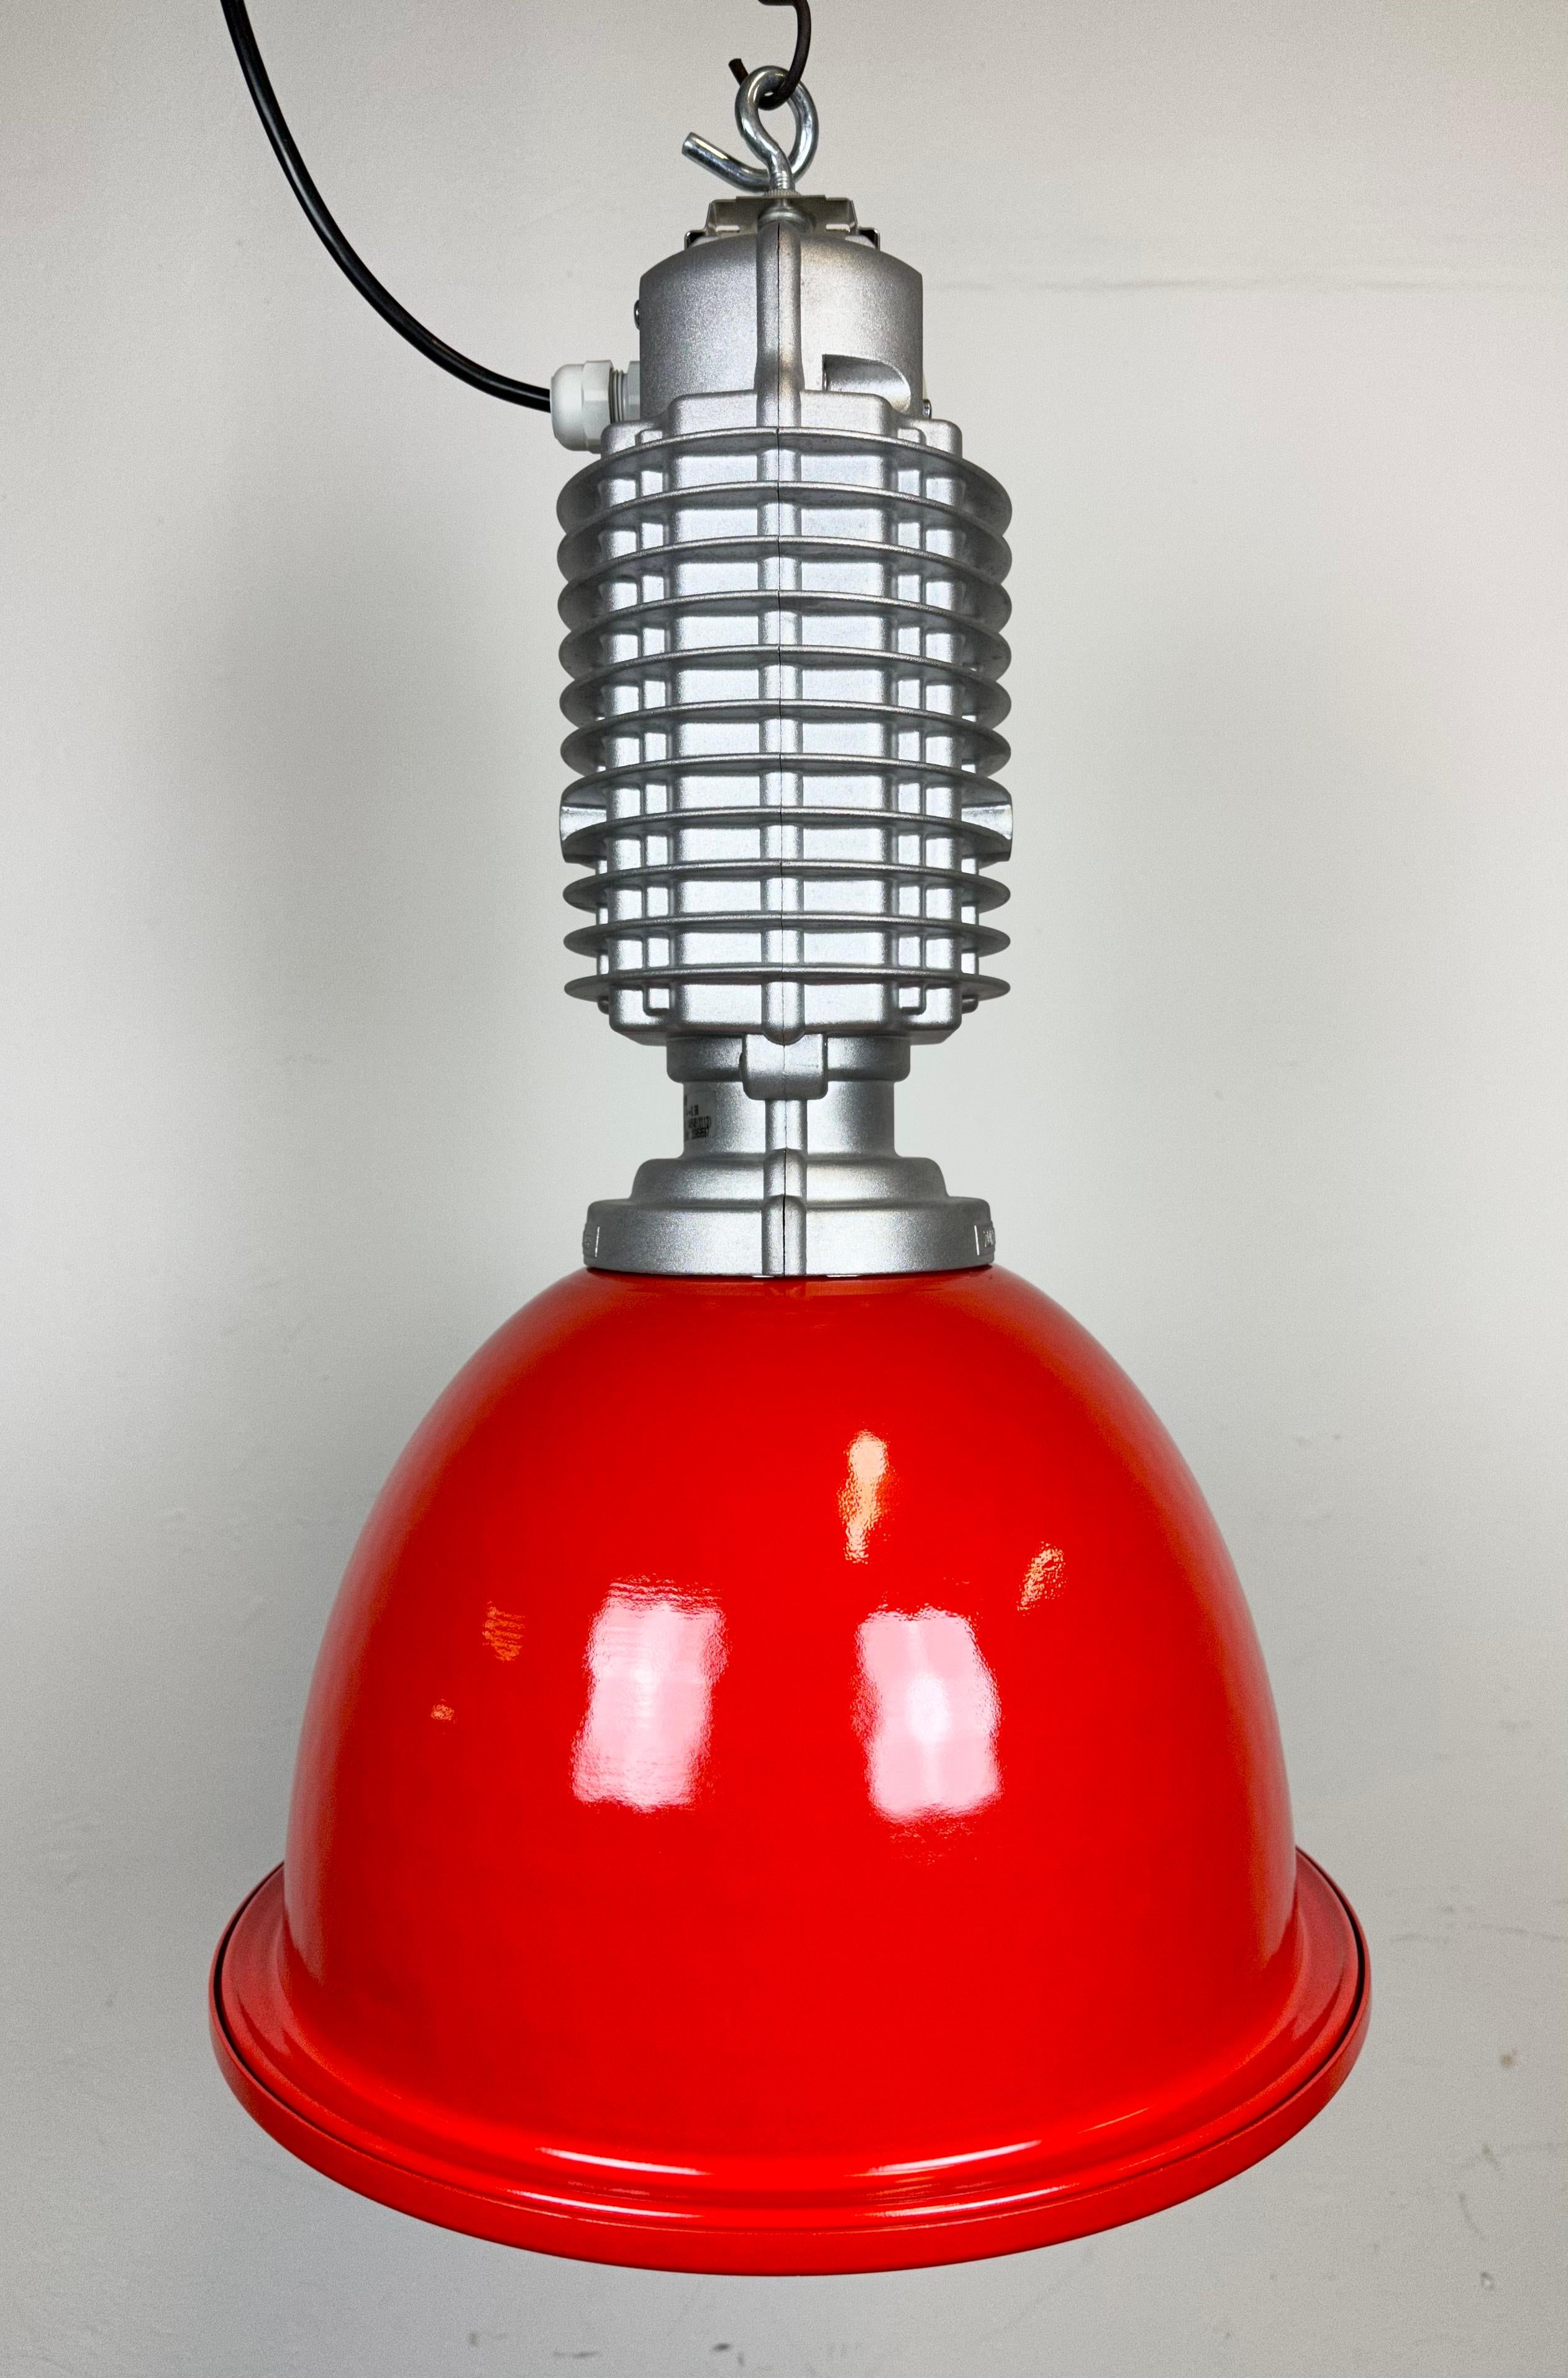 Austrian Industrial Pendant Lamp by Charles Keller for Zumtobel, 1990s For Sale